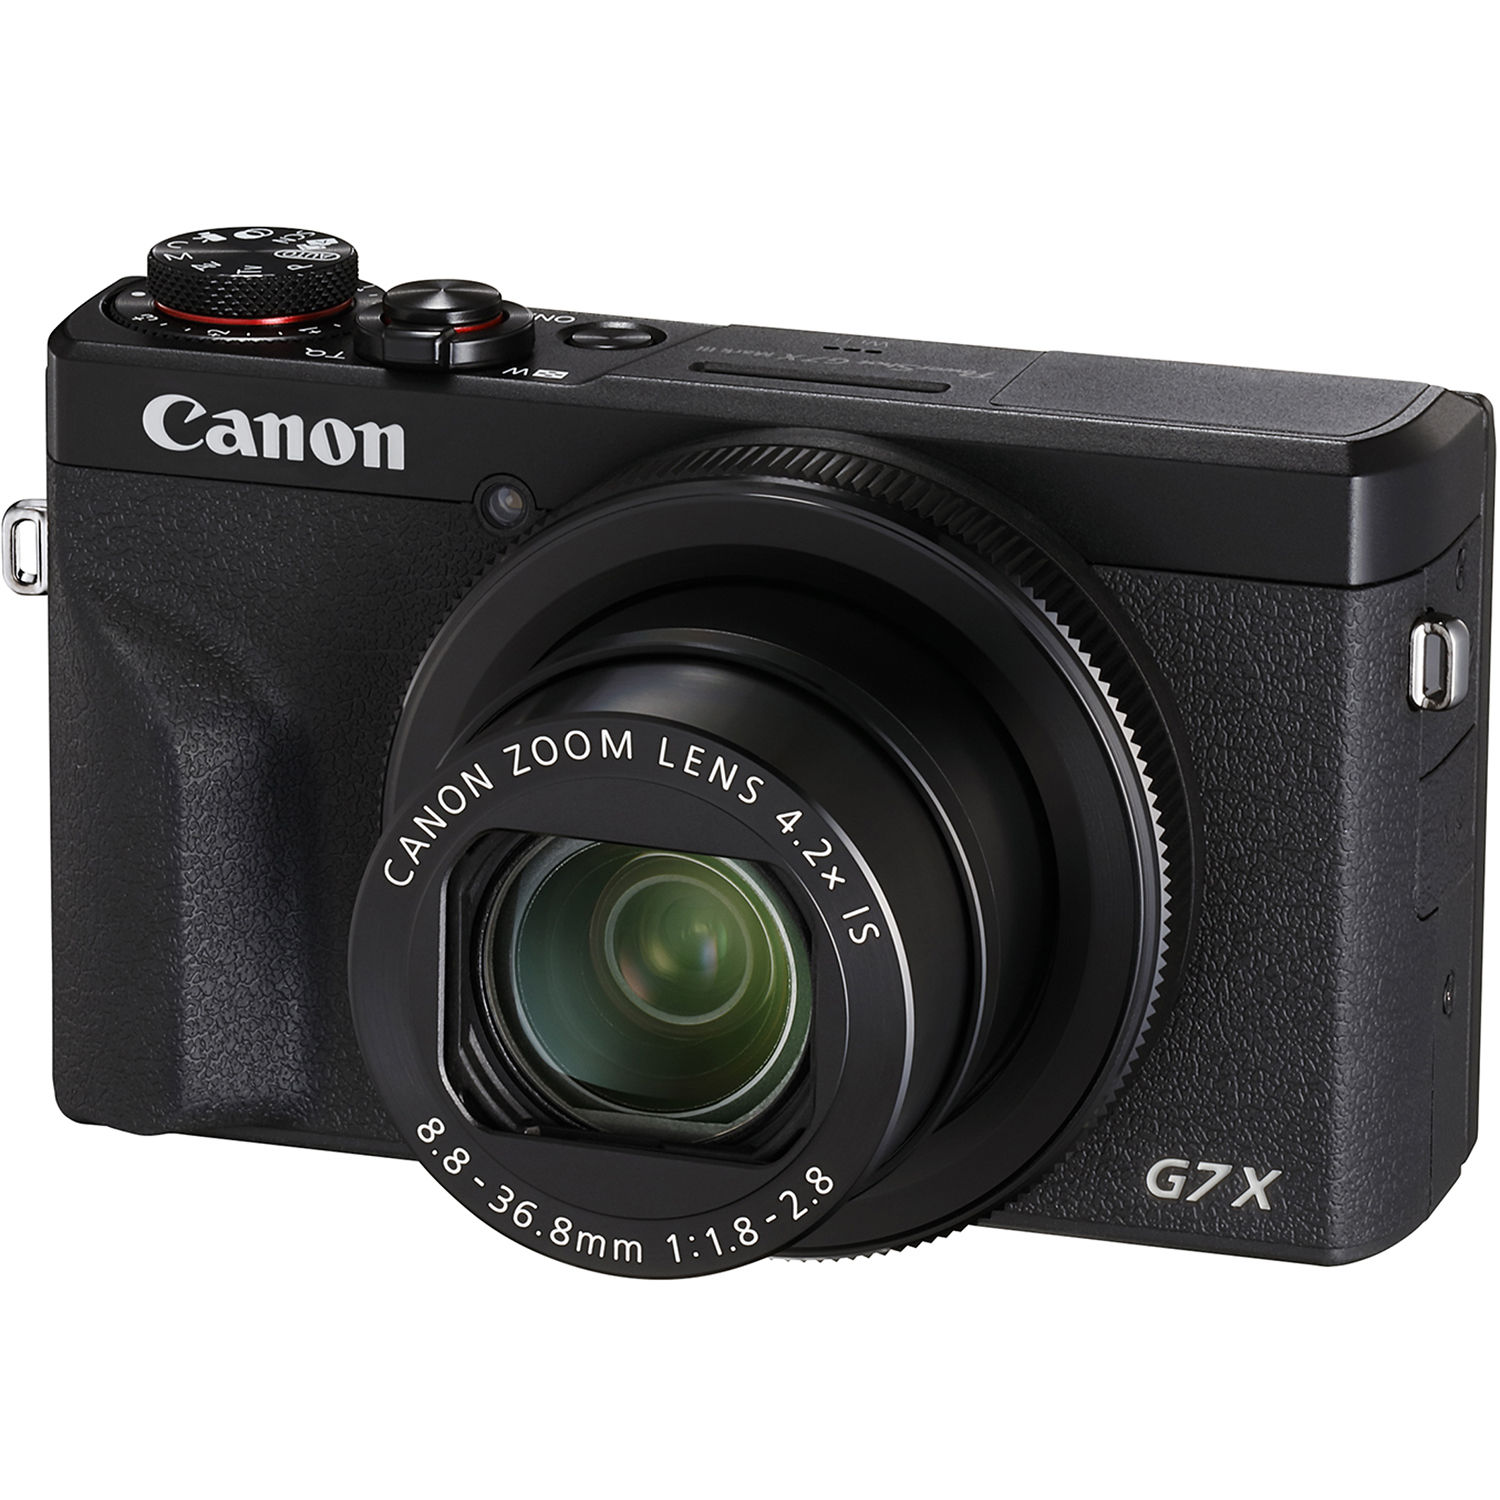 Canon PowerShot G7X Mark III (Mới 100%) Bảo hành chính hãng